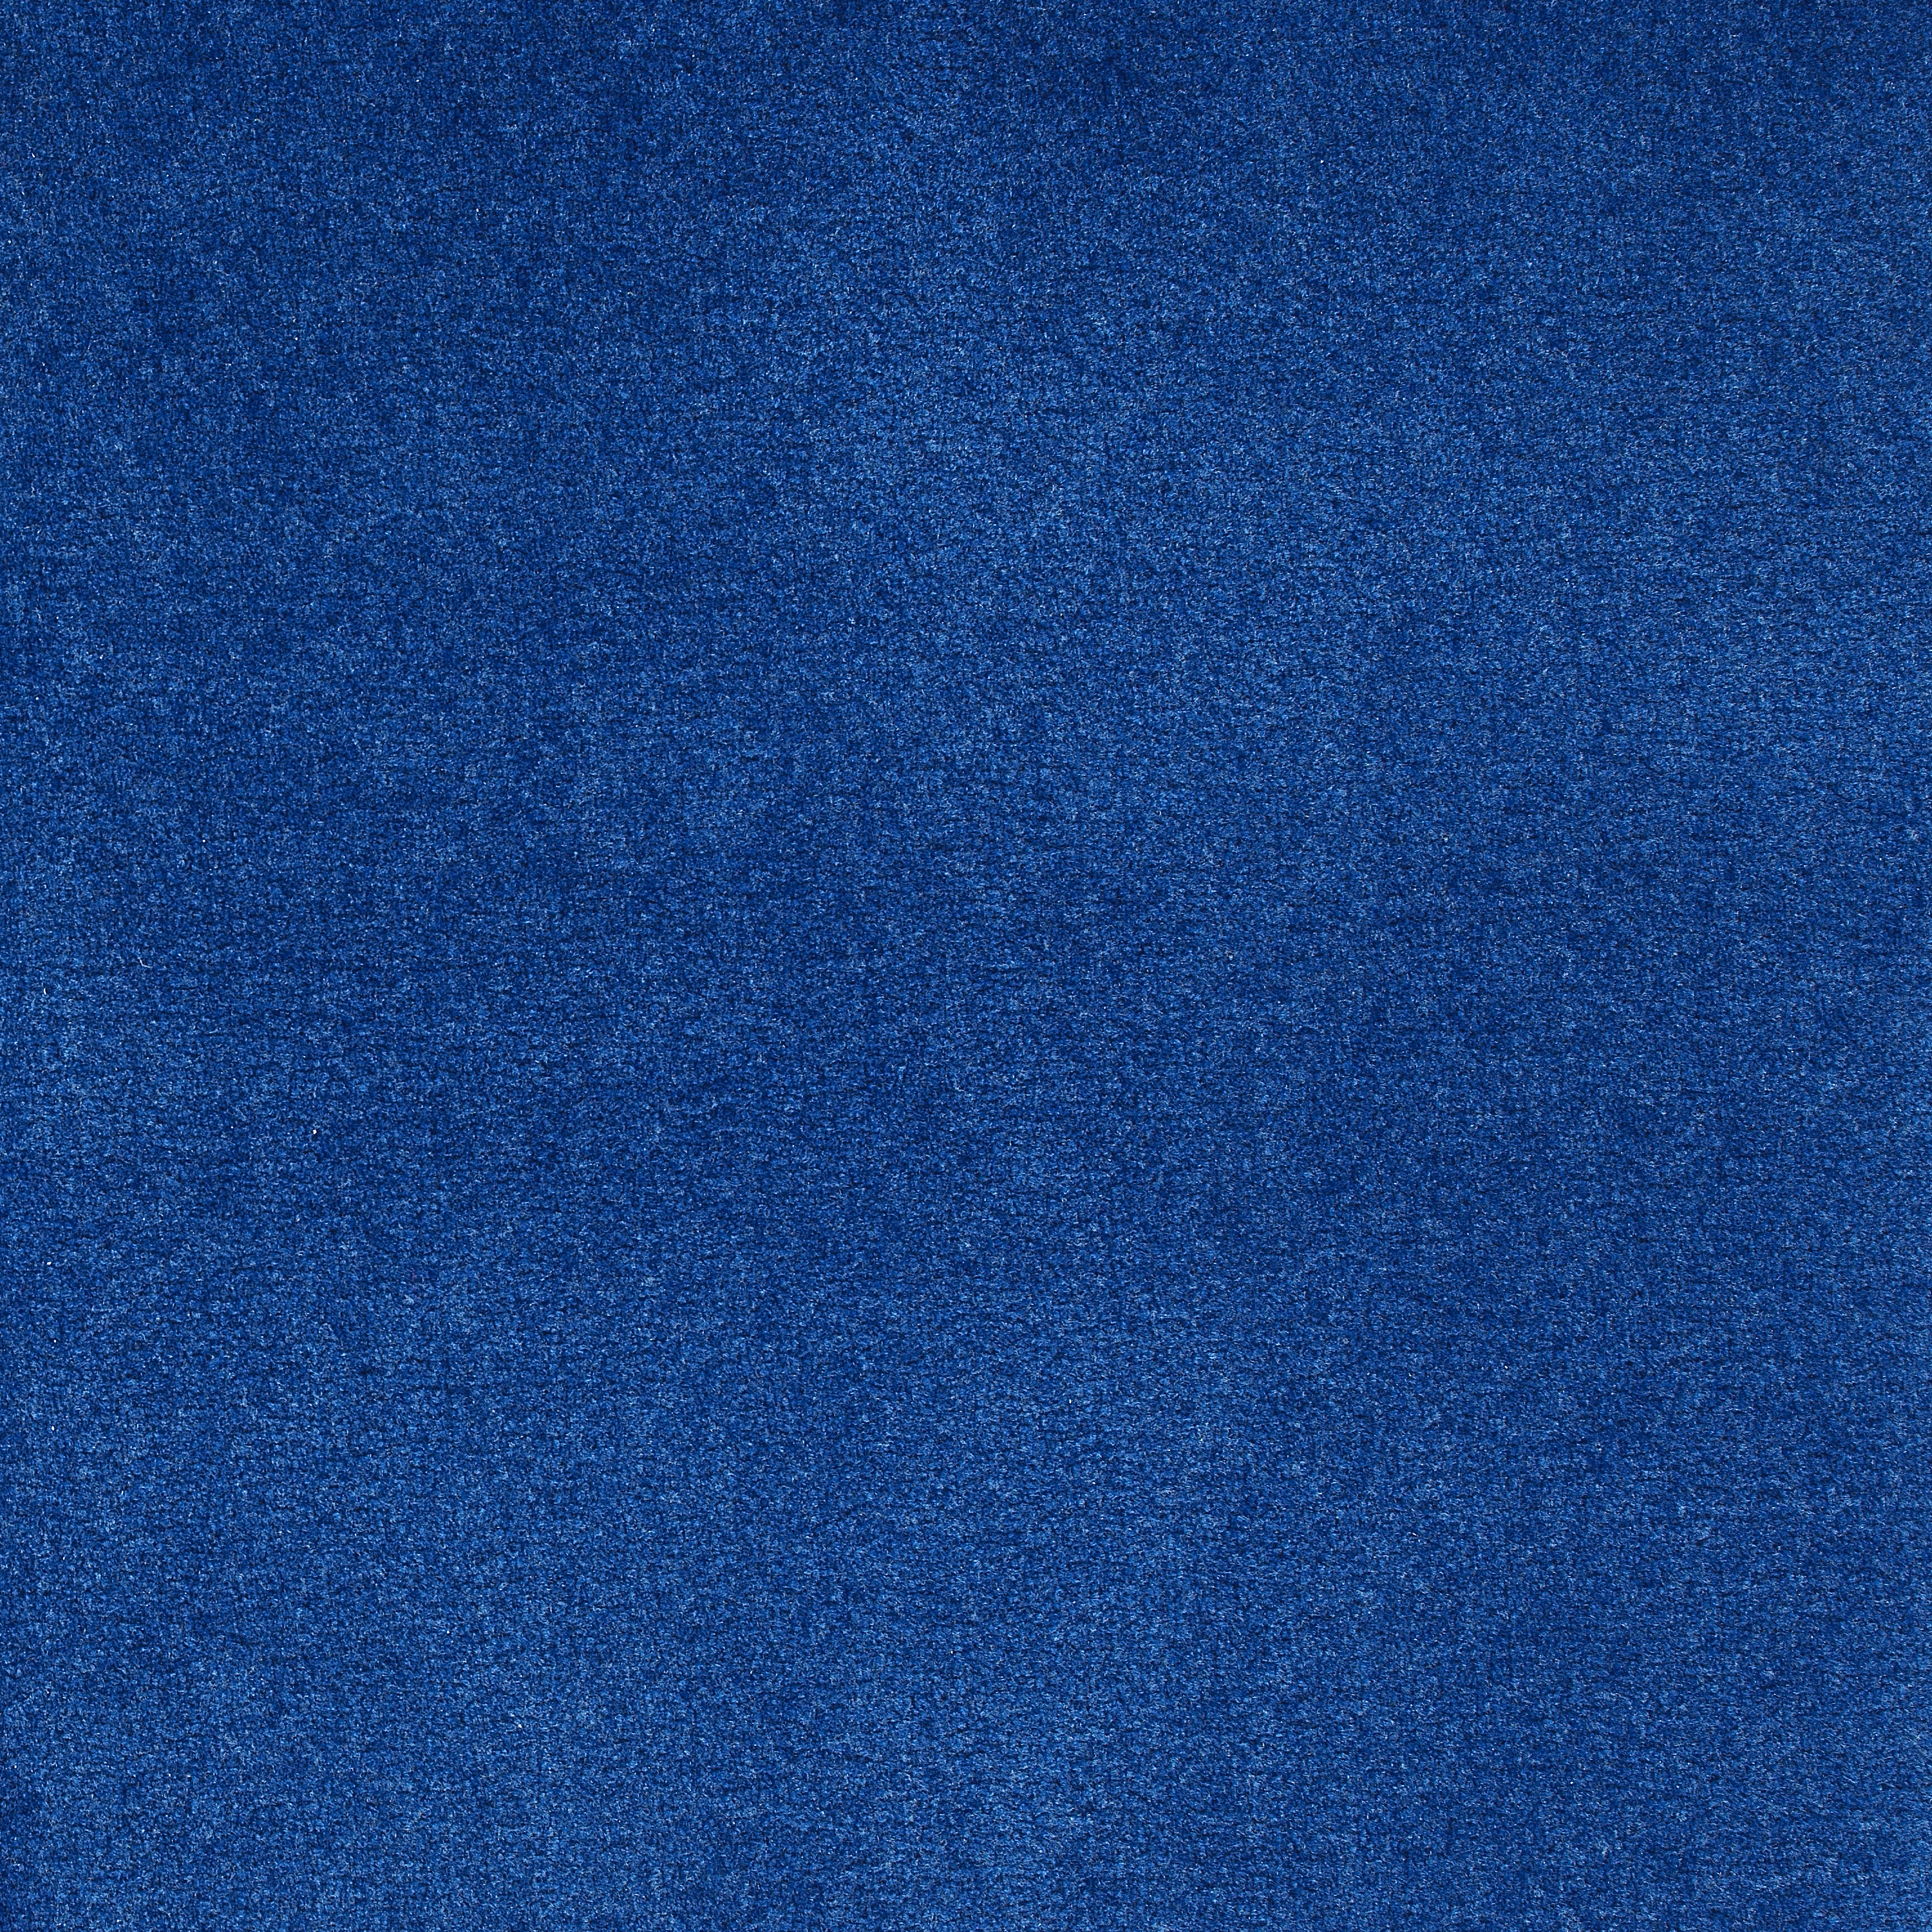 50 oz blueberry | 50 Oz Carpet | Premum Carpet Options | The Inside Track